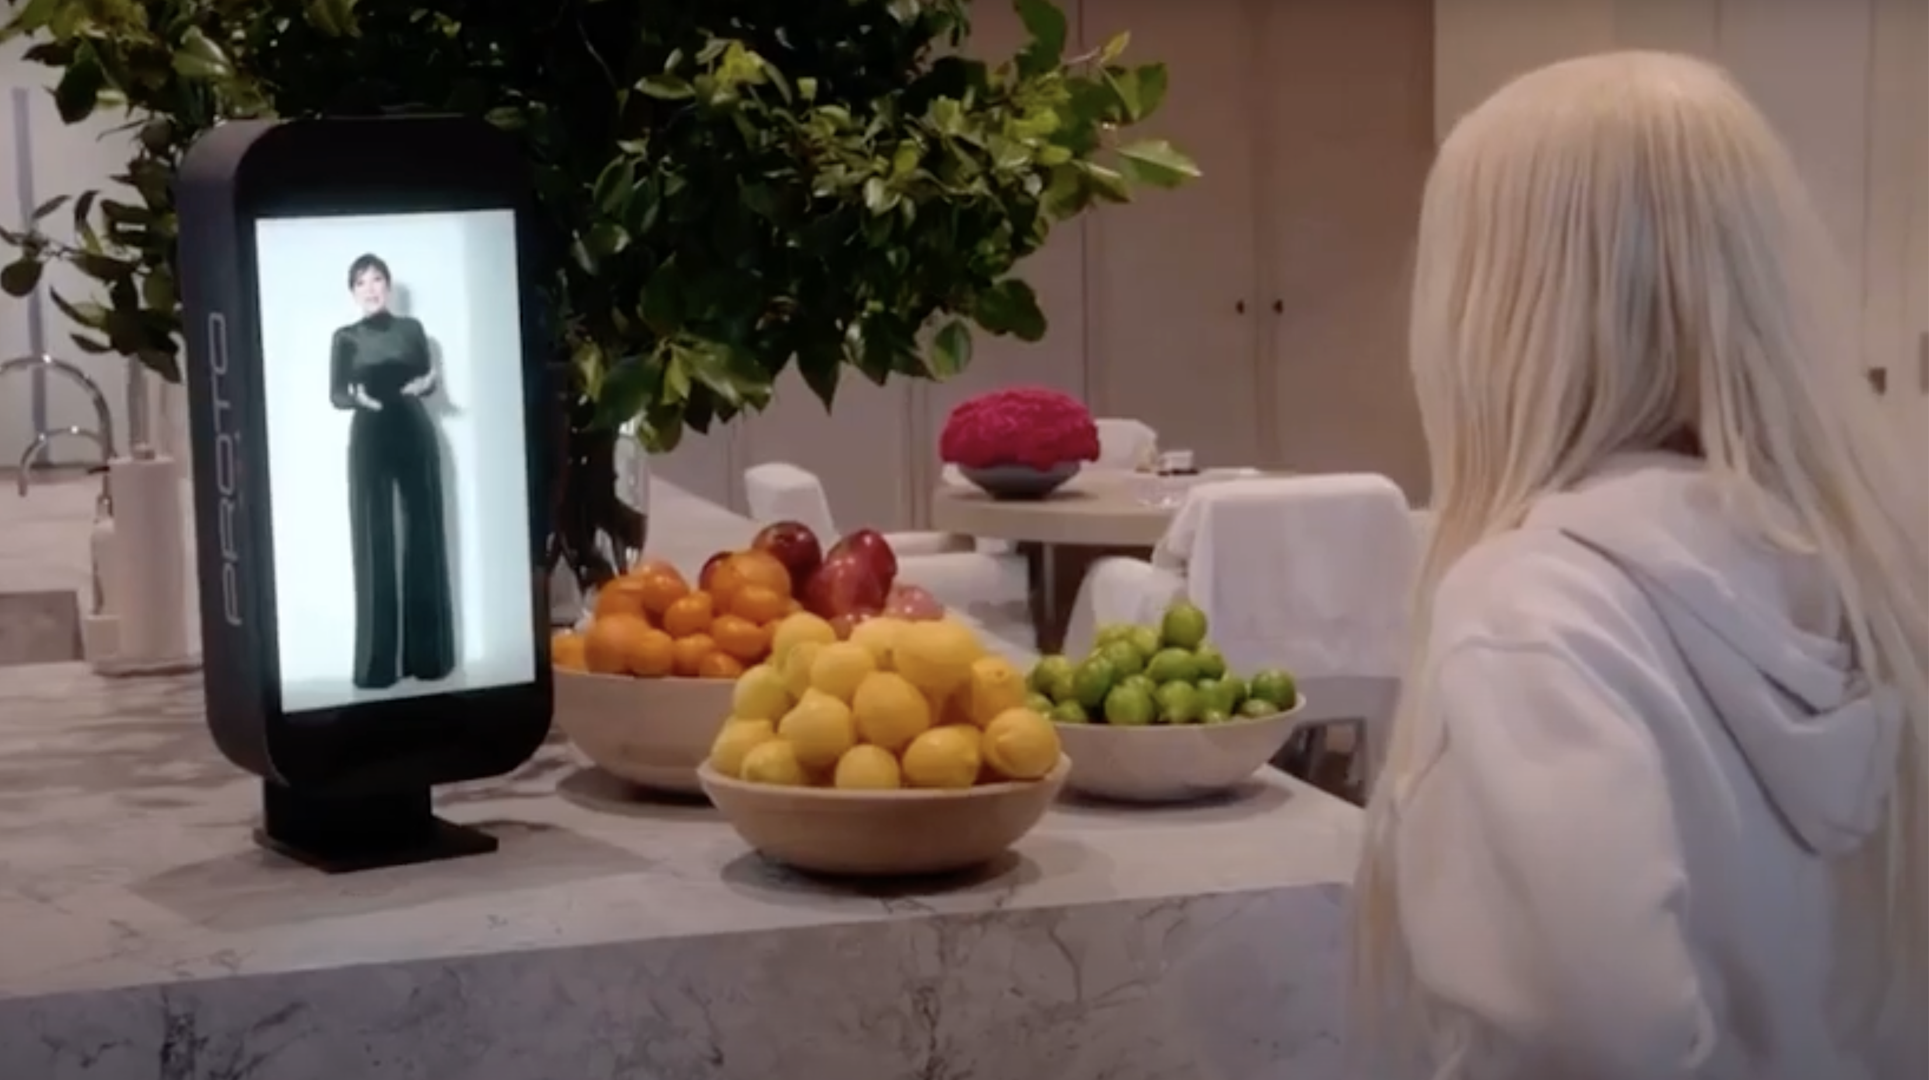 Kris Jenner appears on the Proto Mini to surprise Khloe Kardashian.